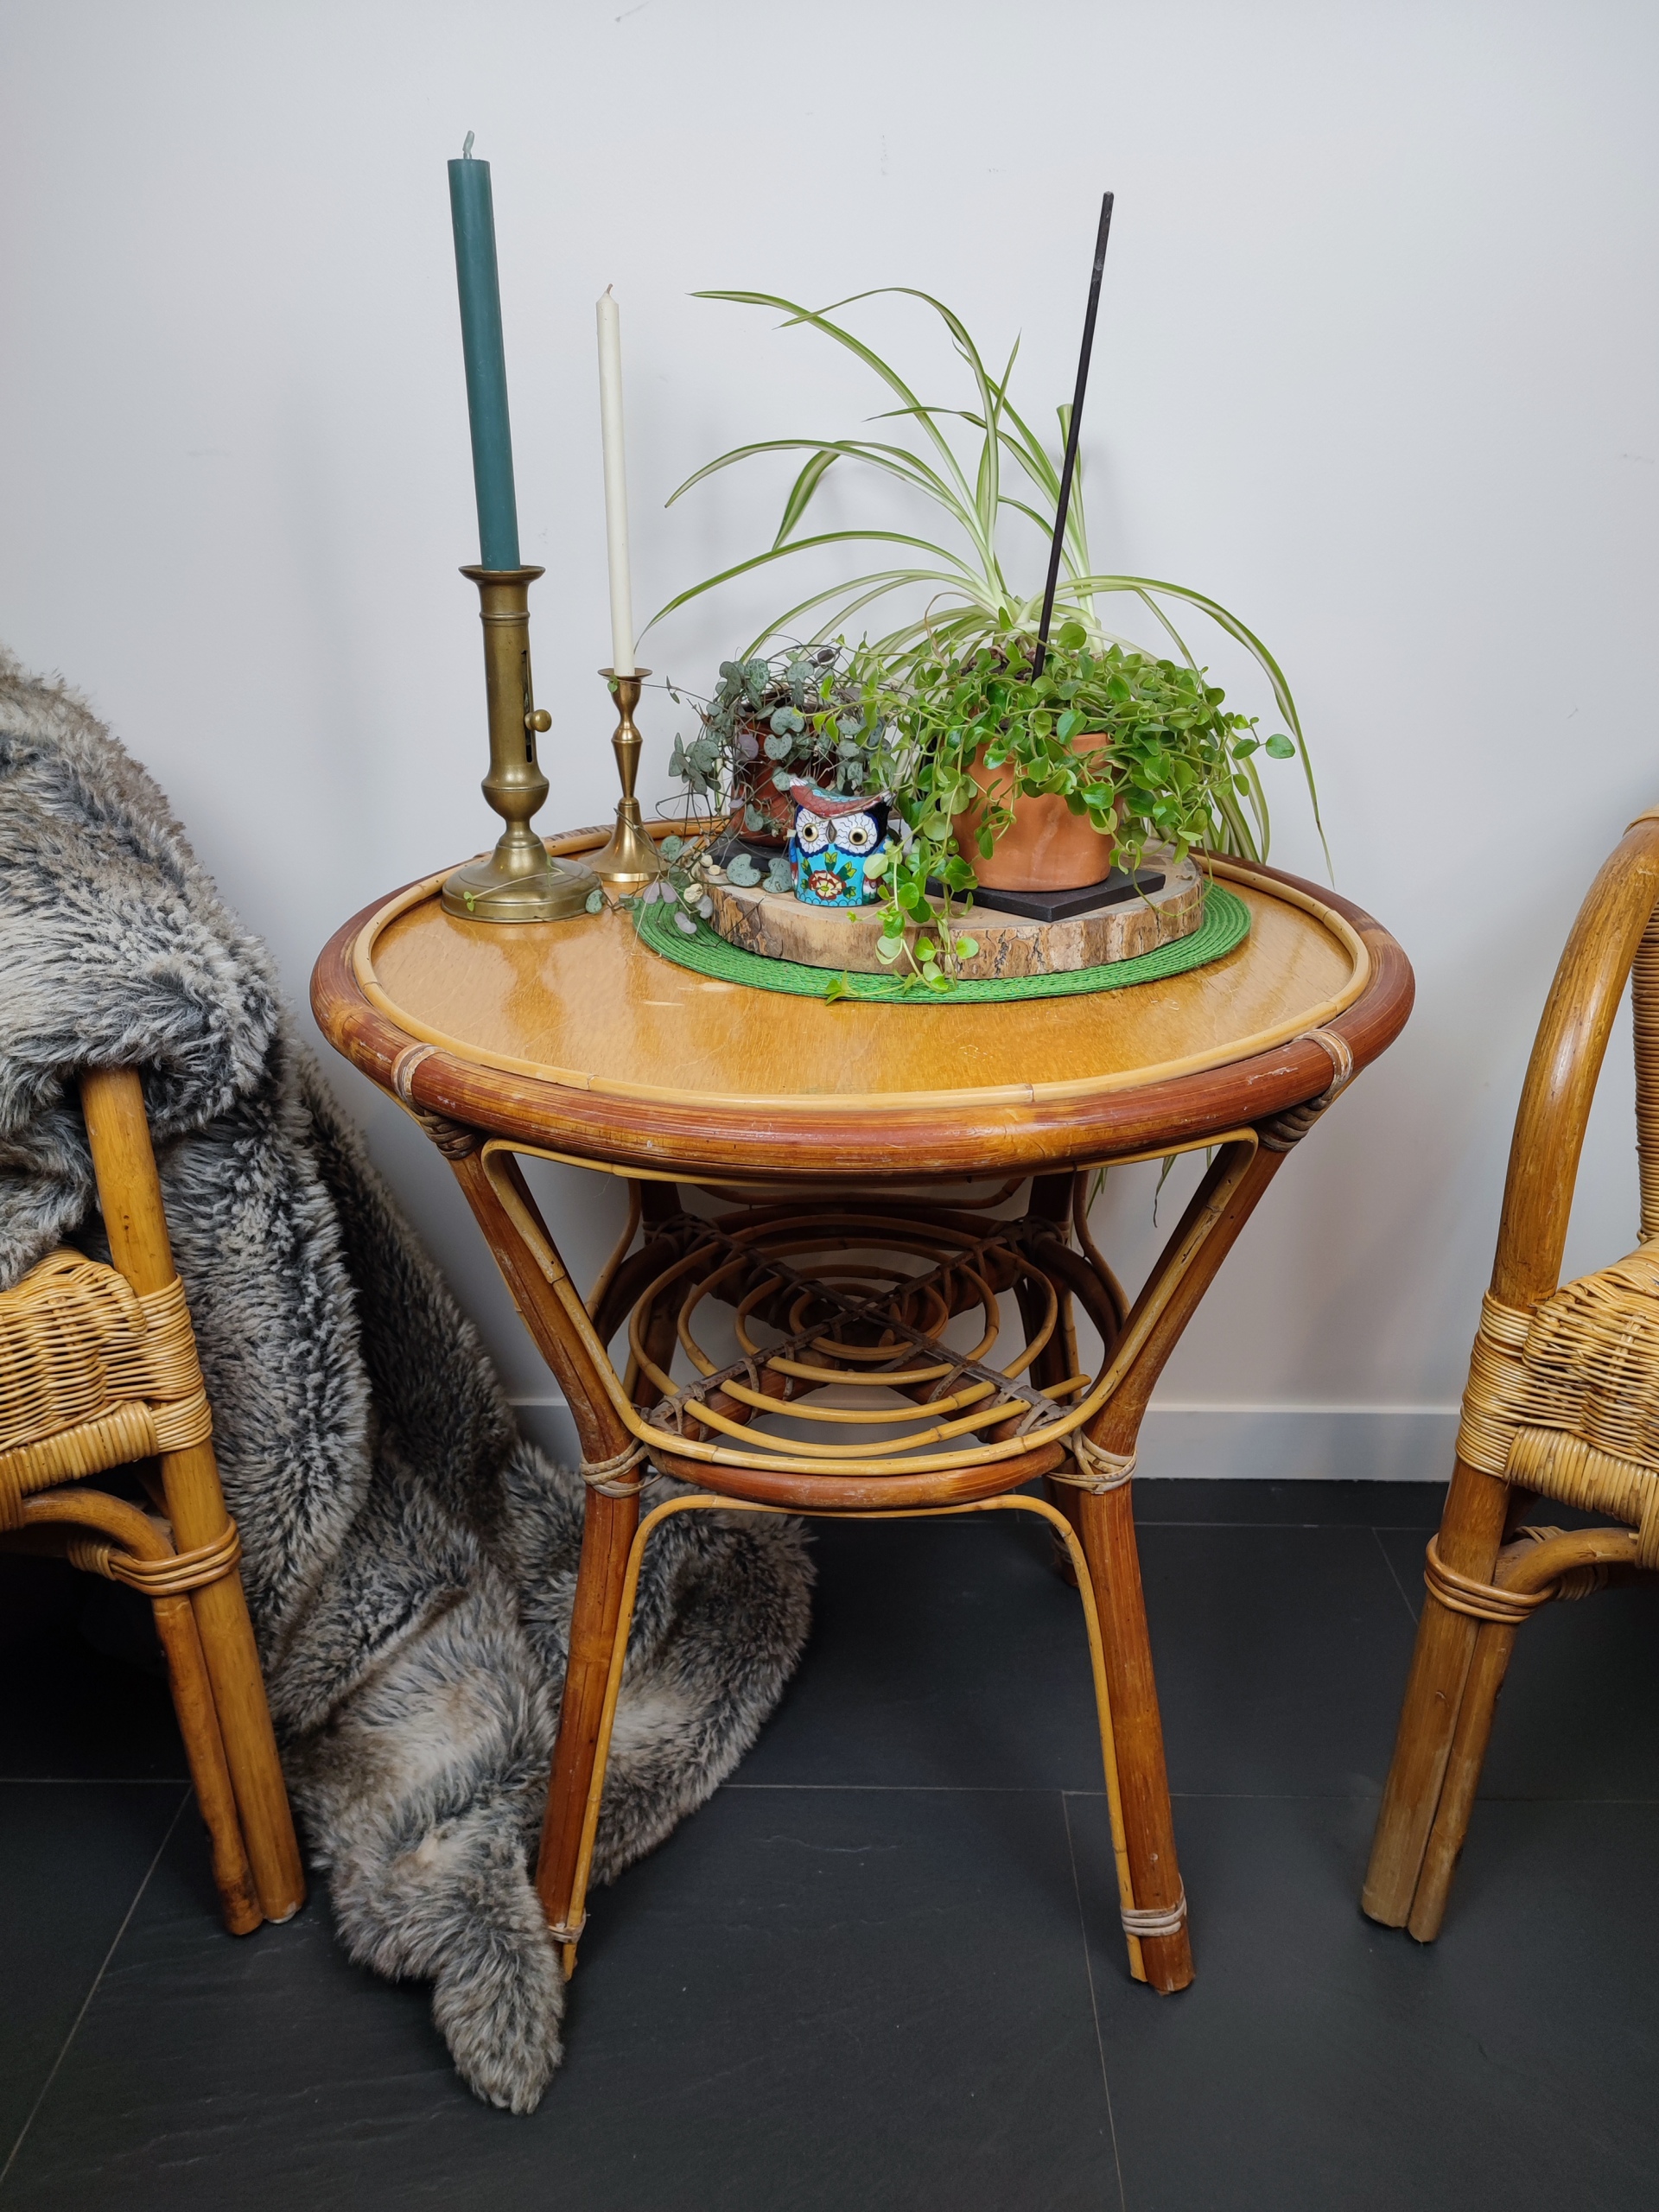 Guéridon ou table basse ronde en bambou et rotin verni avec plateau en contreplaqué et tablette intermédiaire ajouré. Fauteuils an rotin assortis.